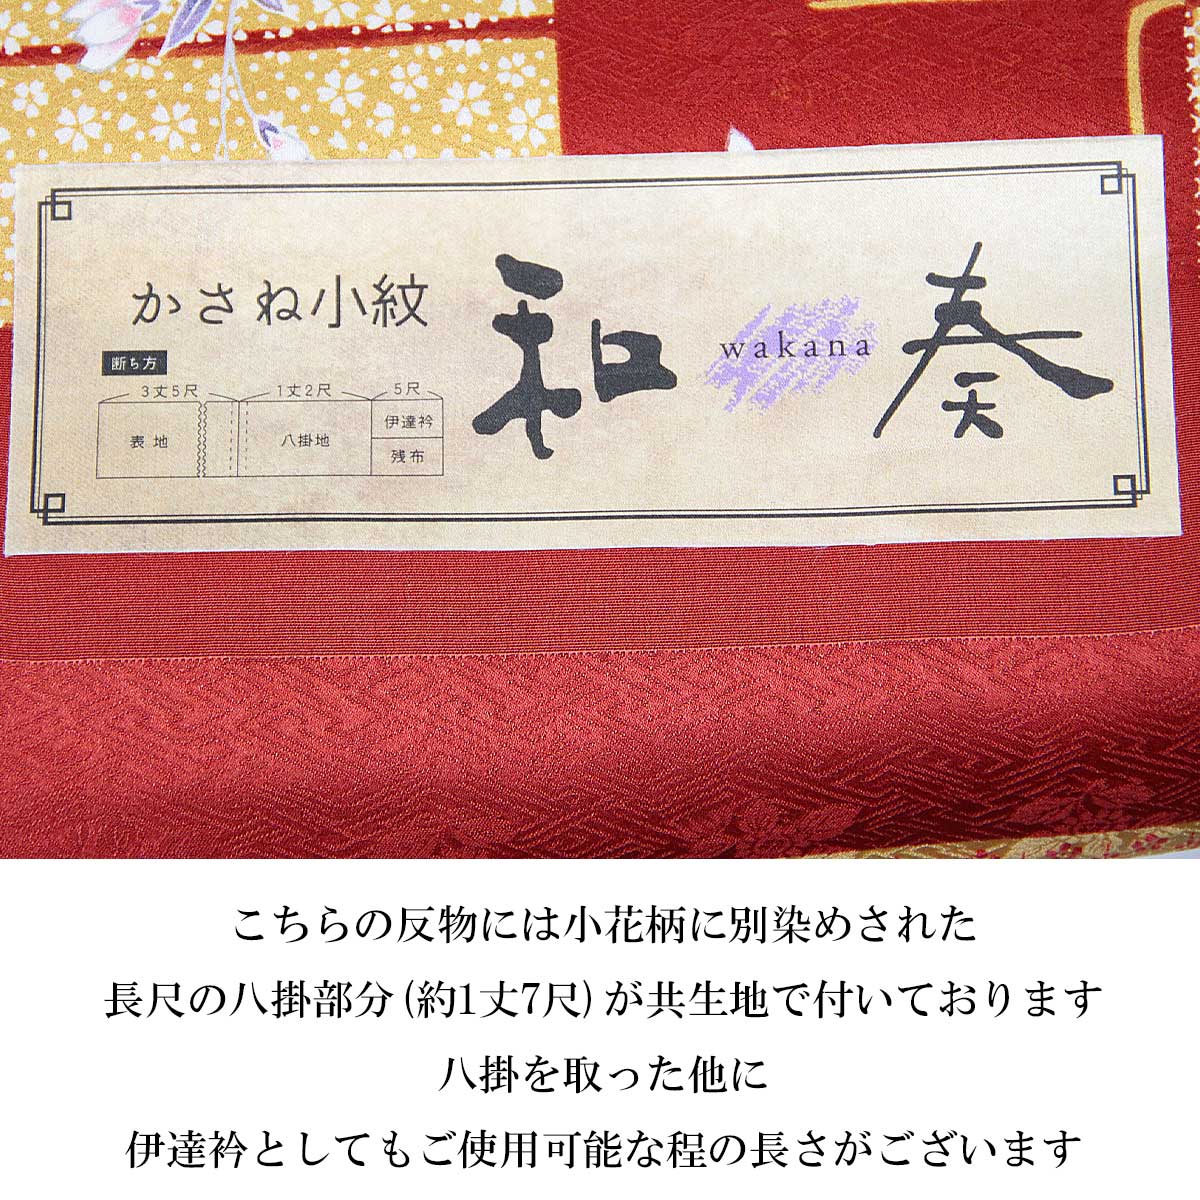 小紋 反物 -46- 和奏 京友禅 紋意匠ちりめん 八掛付き 絹100% 市松/花 